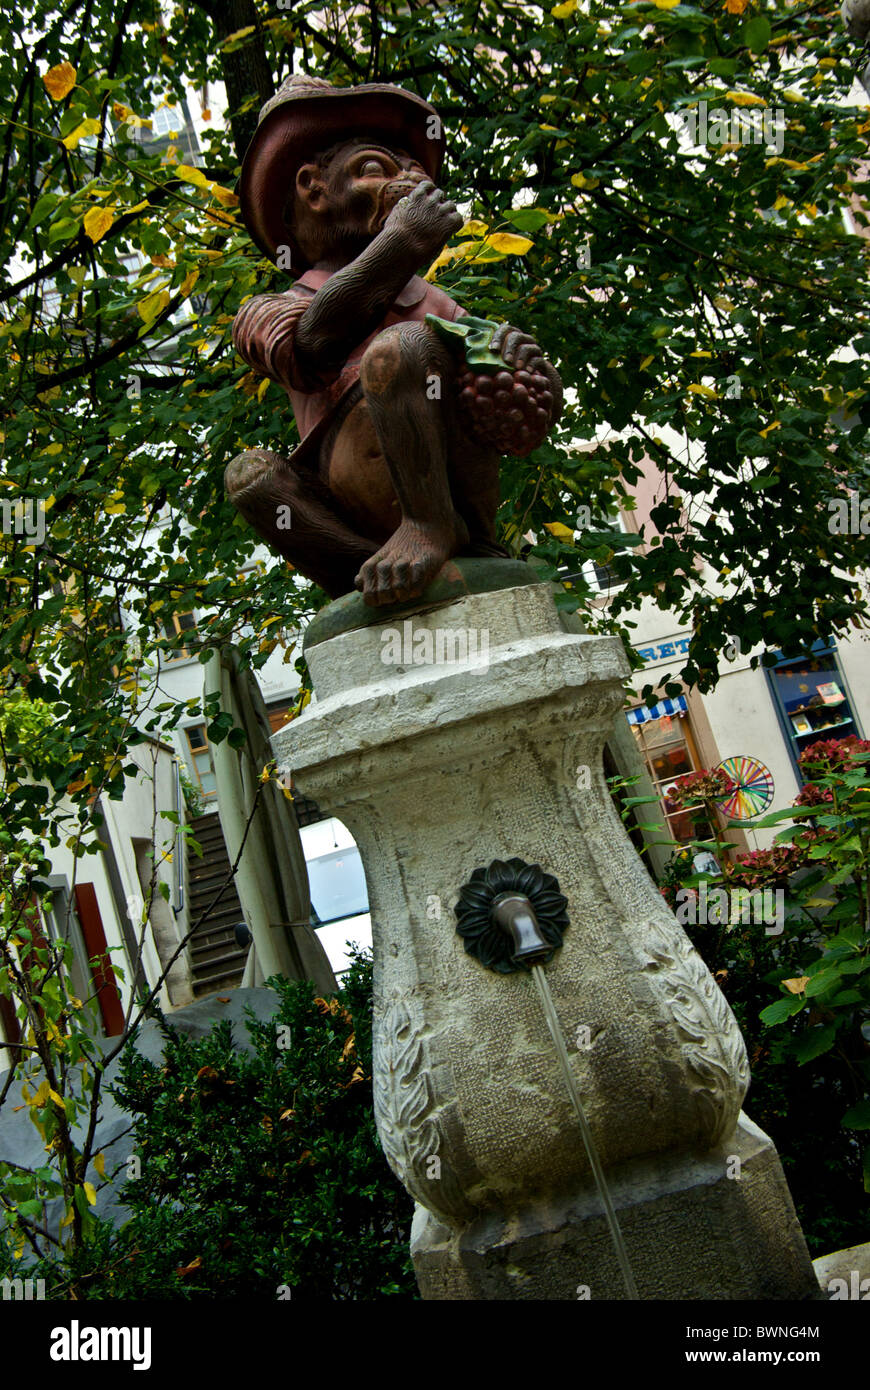 Whimsical vistiendo mono hat comer fruta escultura fuente de agua potable uno de 170 en Basilea, Suiza Foto de stock